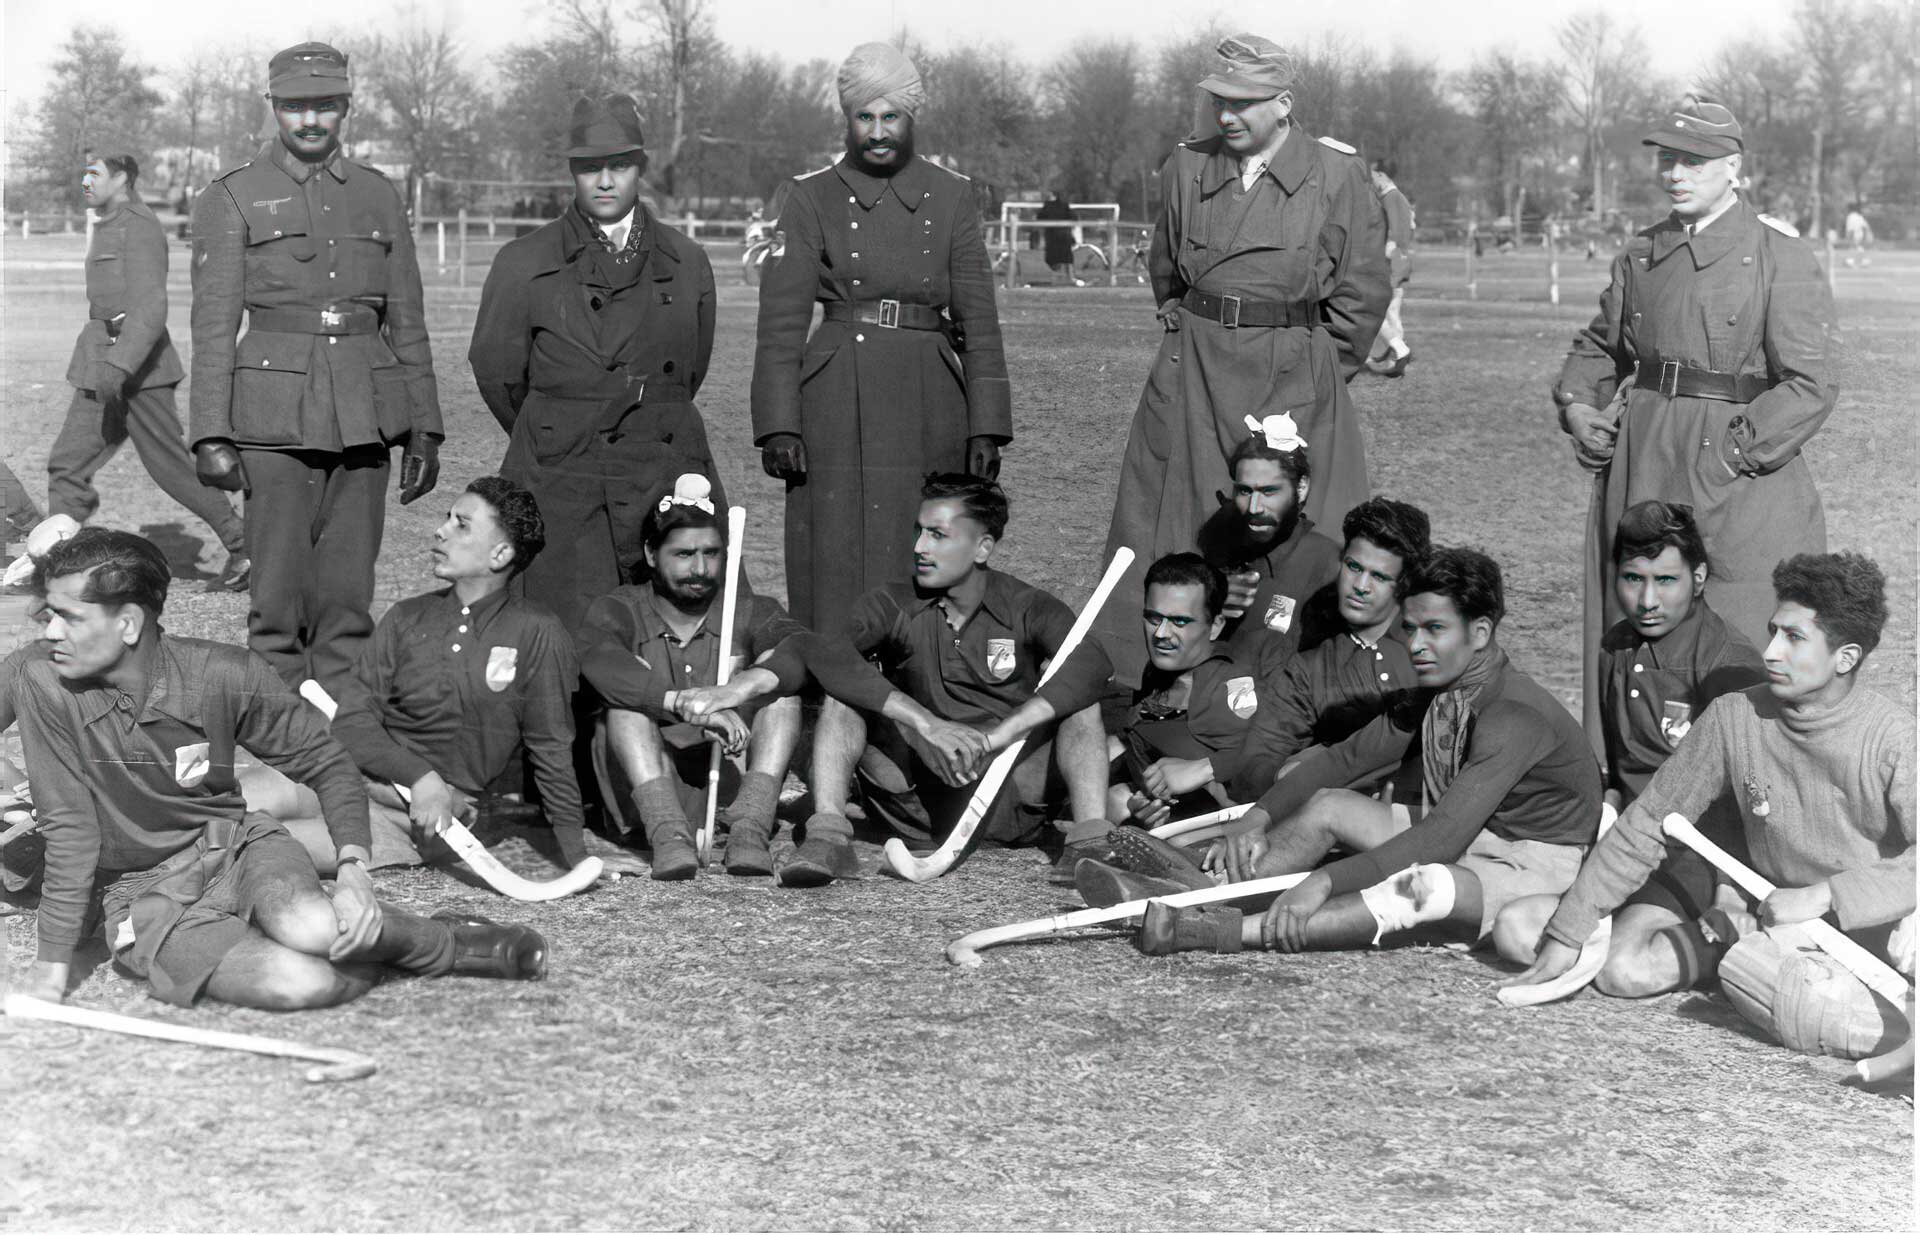 Photographie de deux équipes, une indienne et l'autre de la Wehrmacht, avant leur match de hockey.